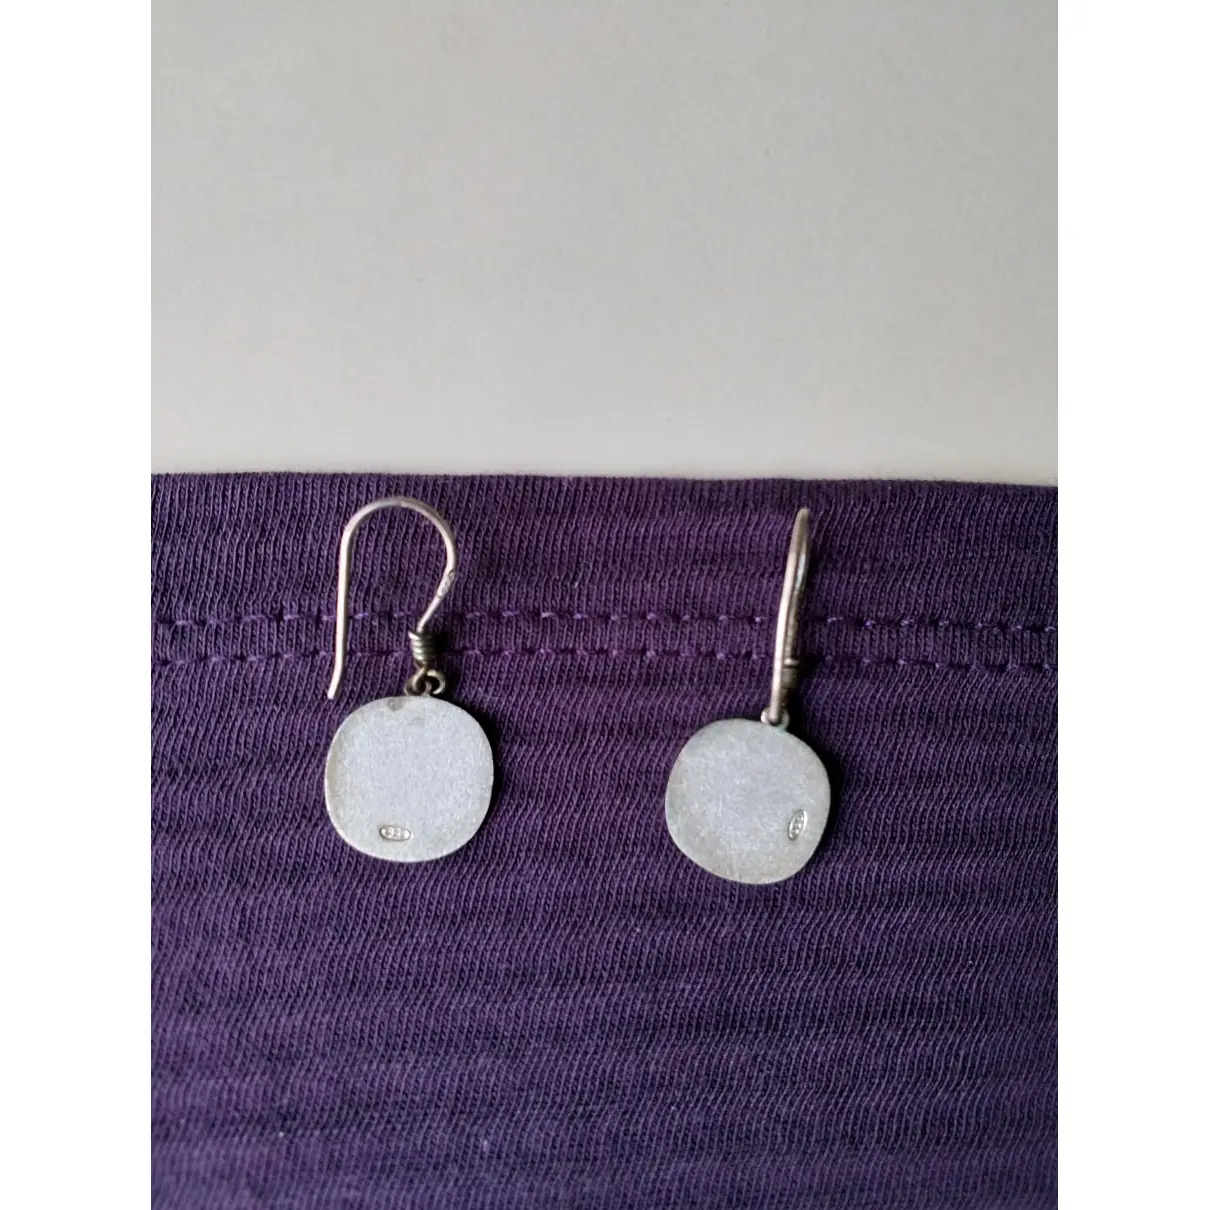 Buy Haga Silver earrings online